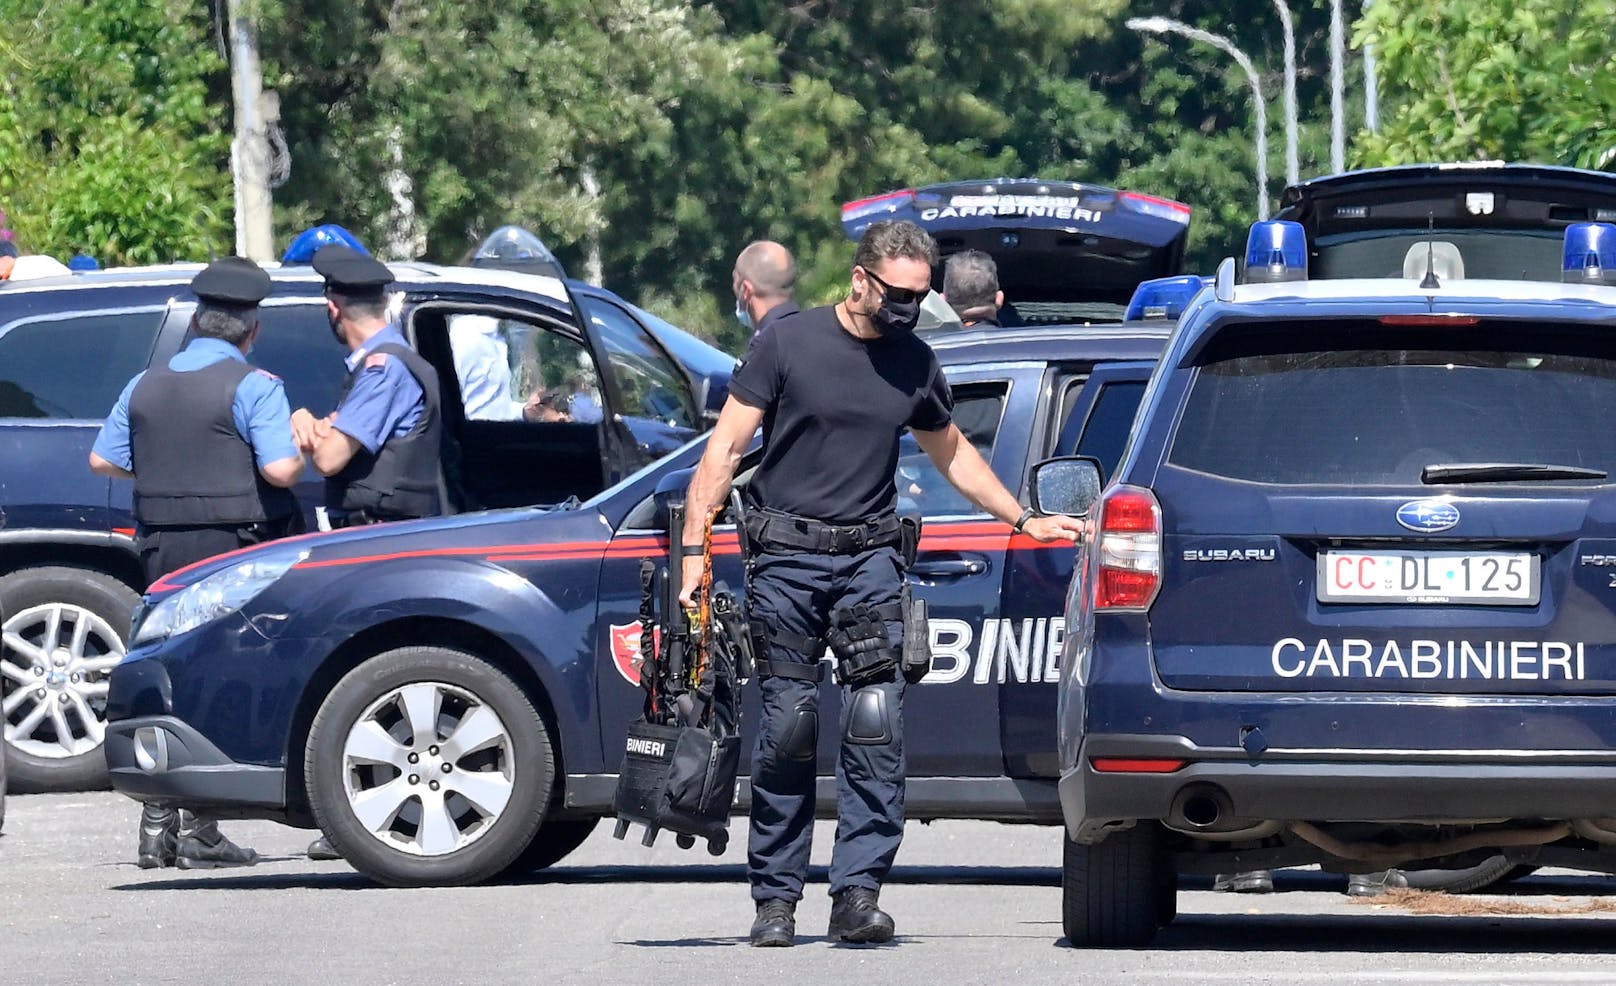 Spezialkräfte der italienischen Polizei rückten an, um den Täter zu stellen.